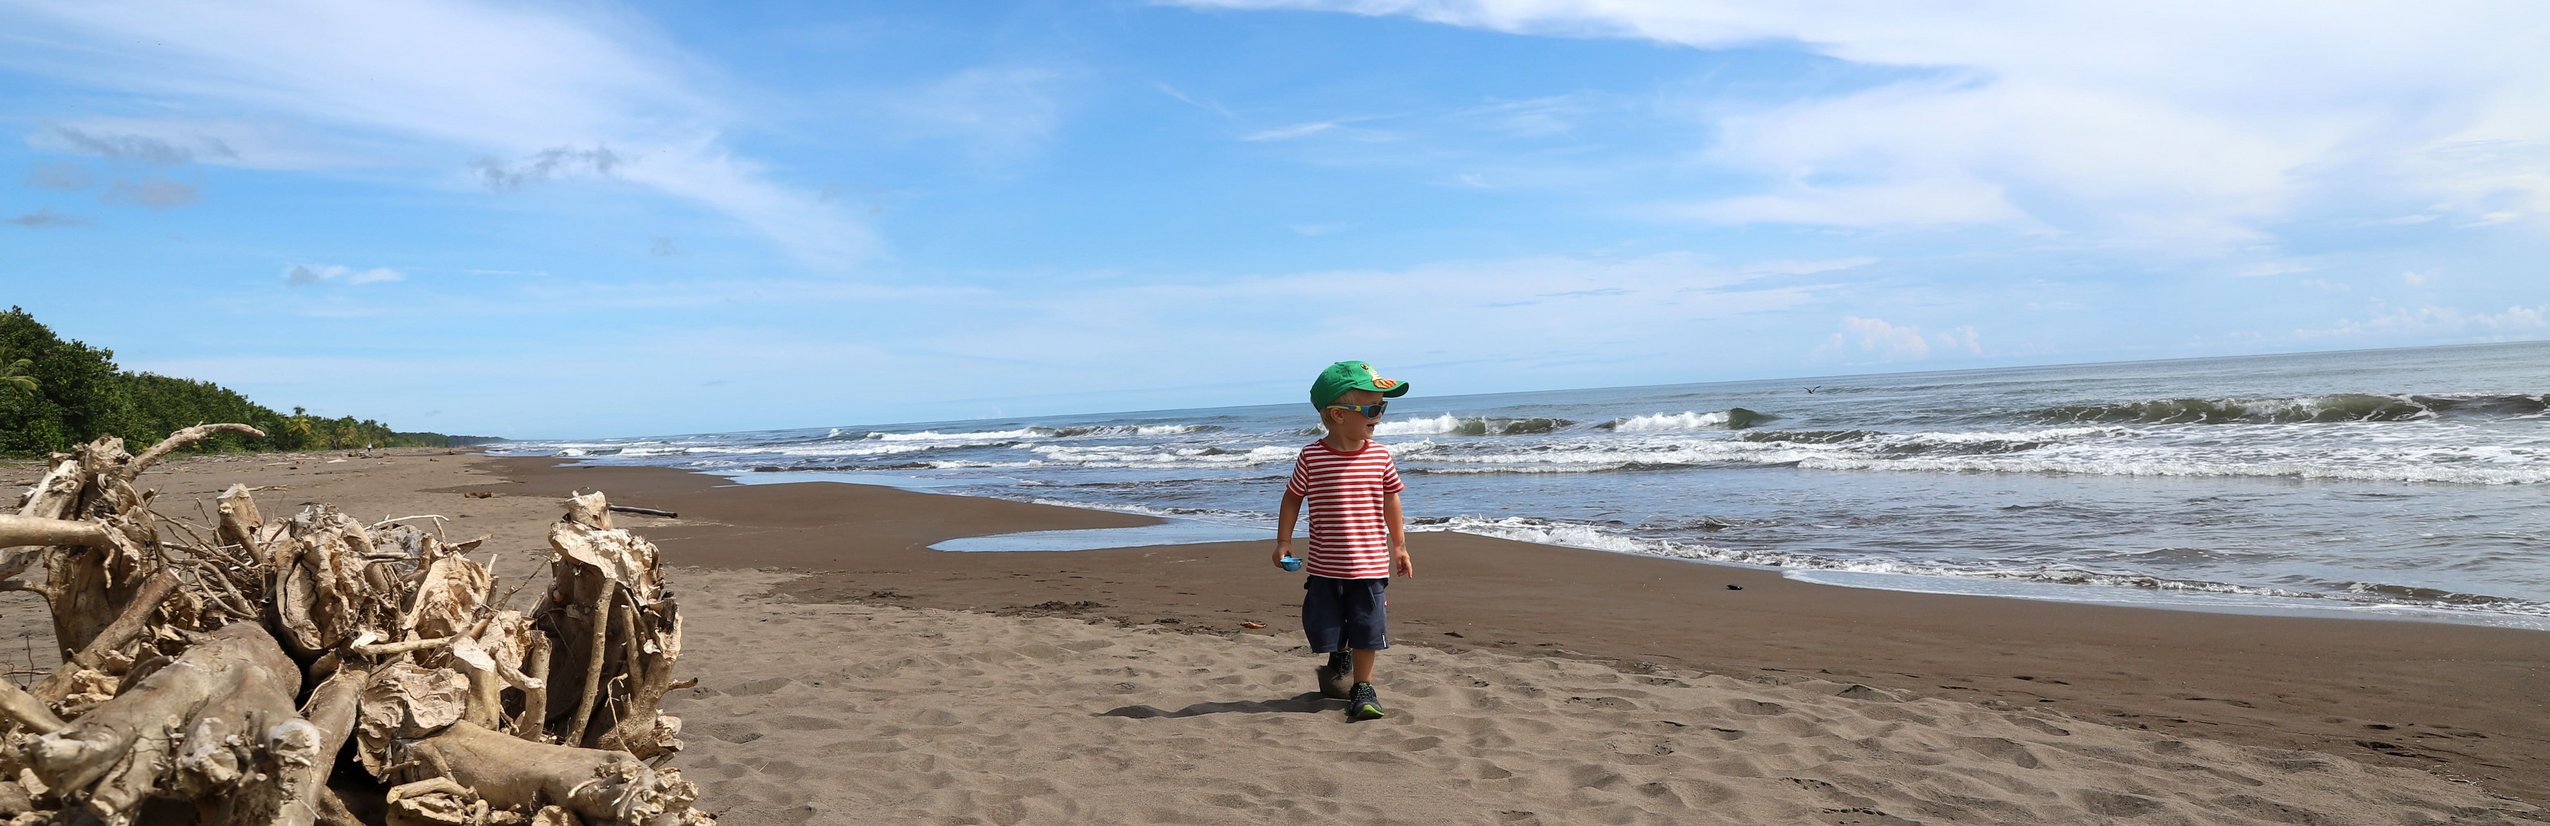 Fernreisen mit Kindern ab wann und wohin - Kleinkind am Strand in Costa Rica